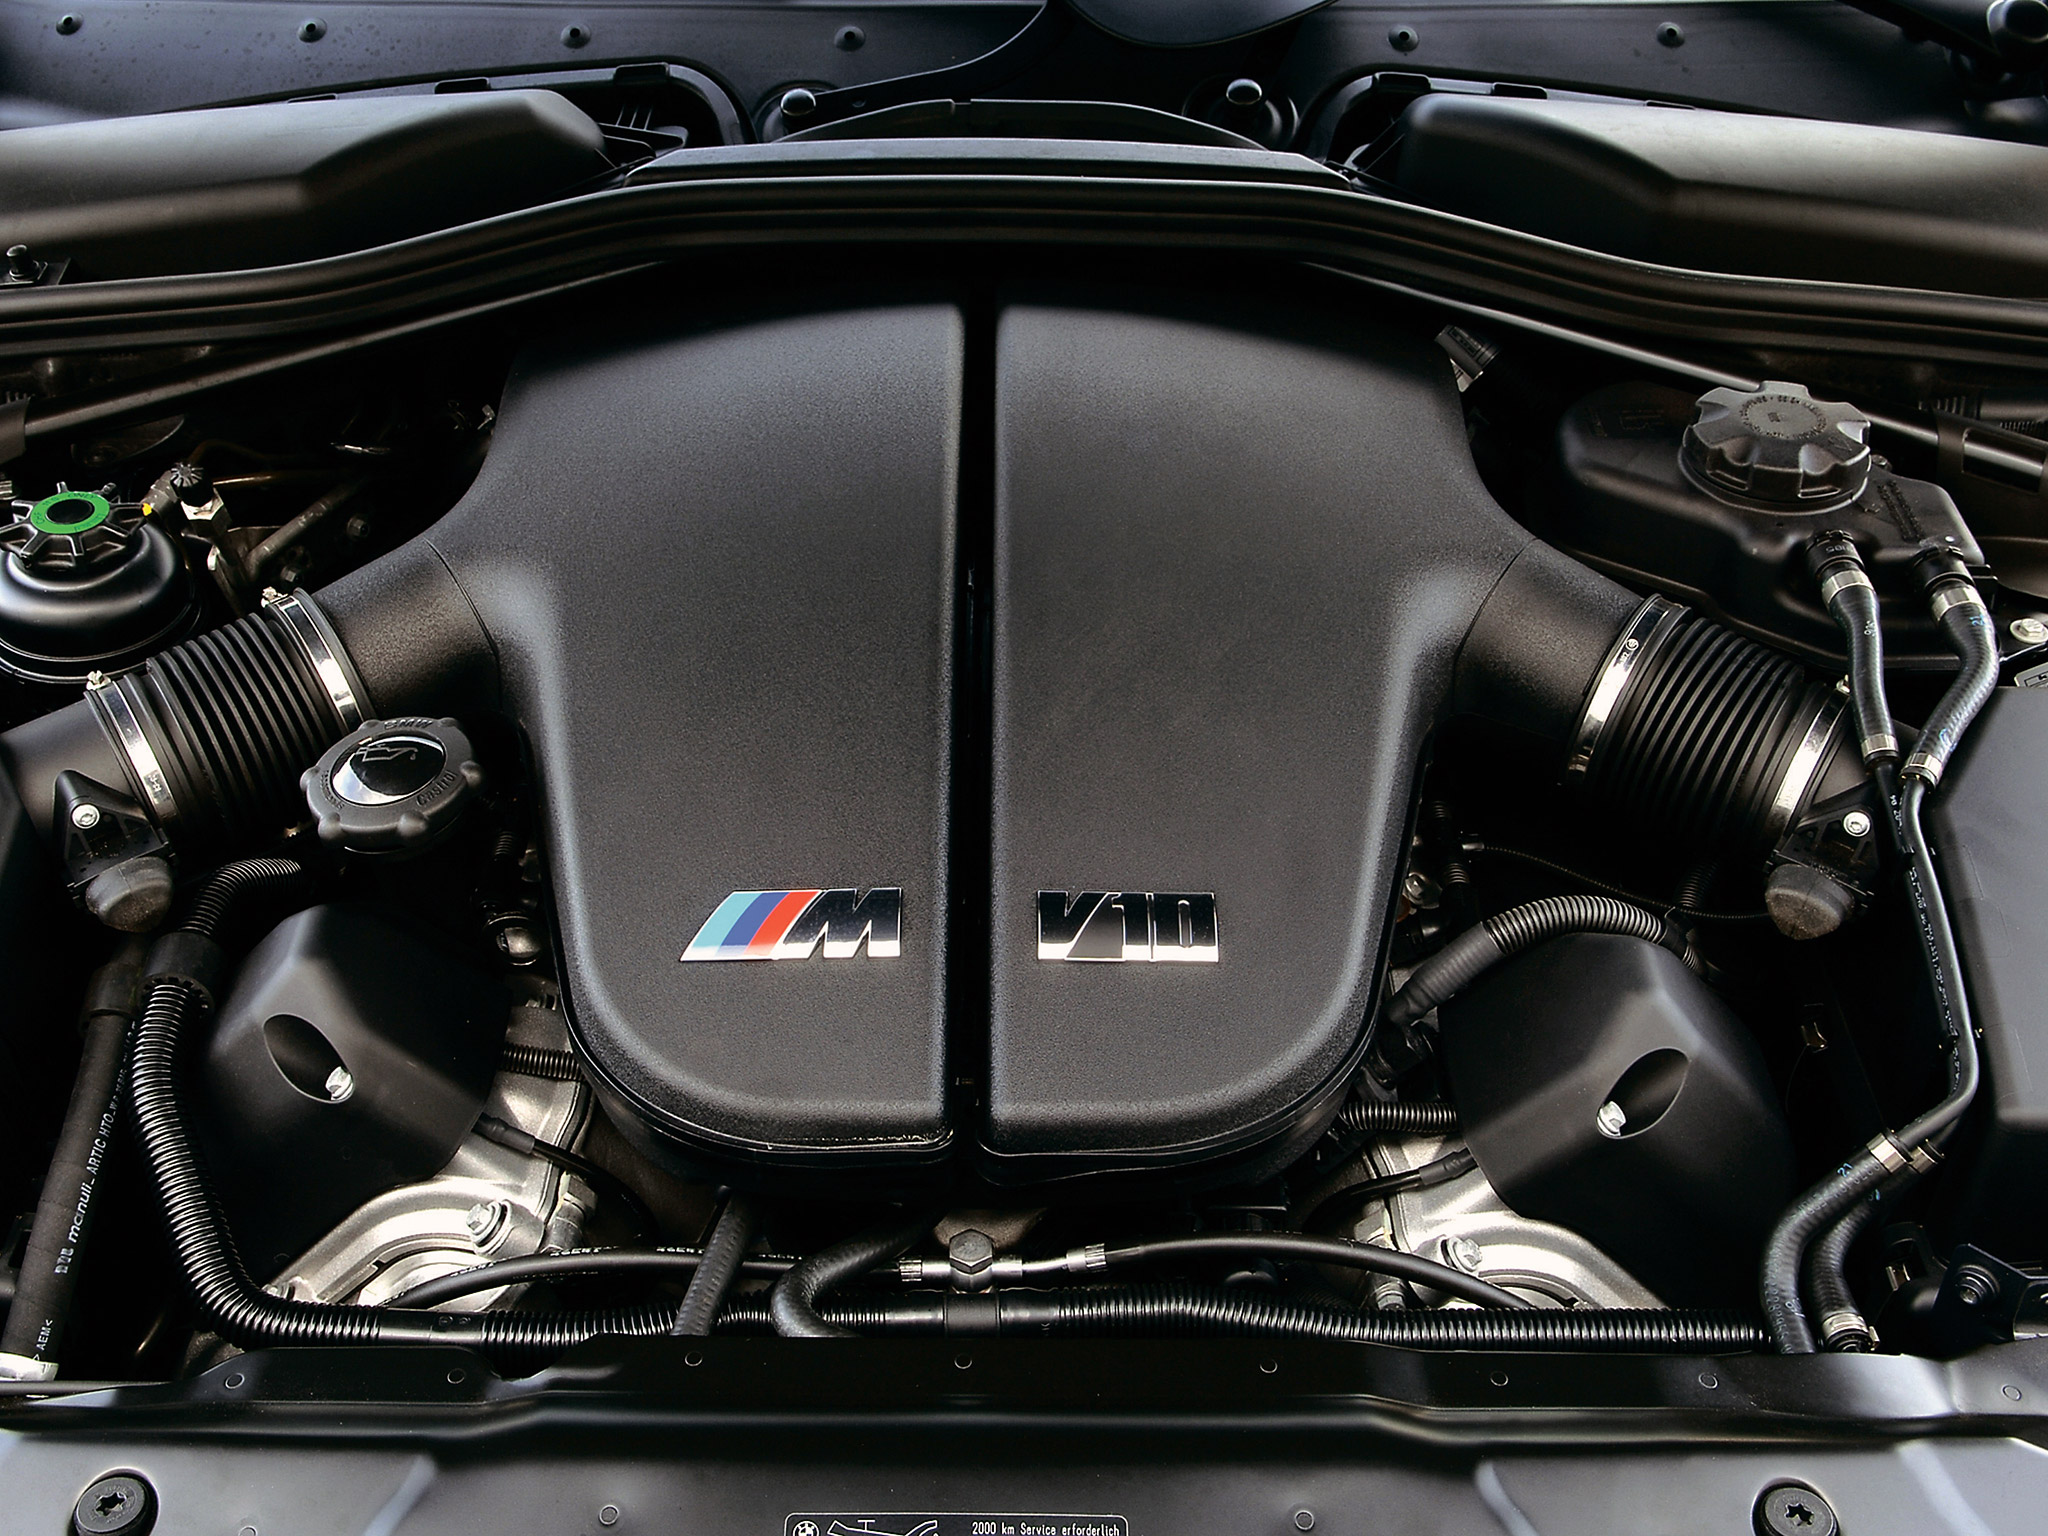  2005 BMW M5 Wallpaper.